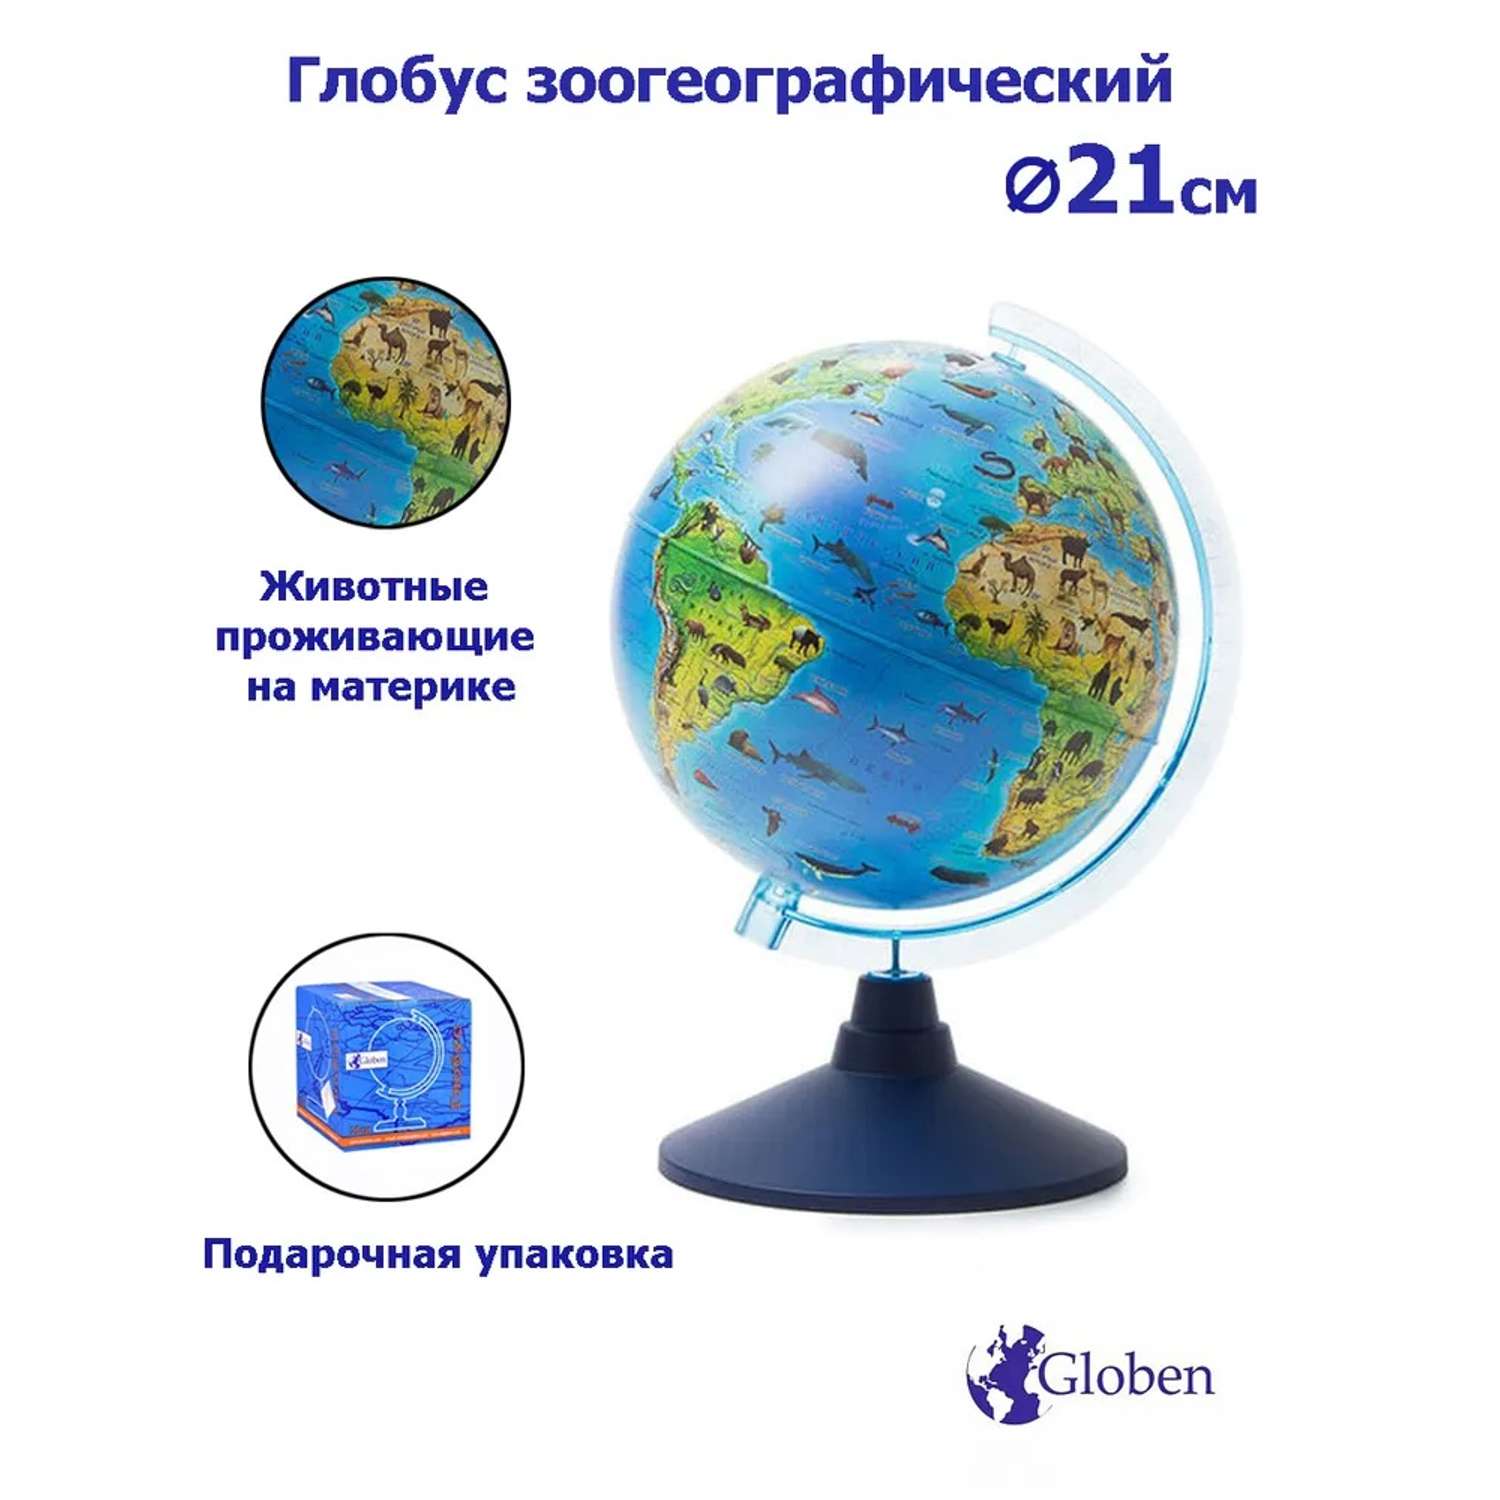 Глобус Globen Зоогеографический детский диаметром 21 см - фото 2